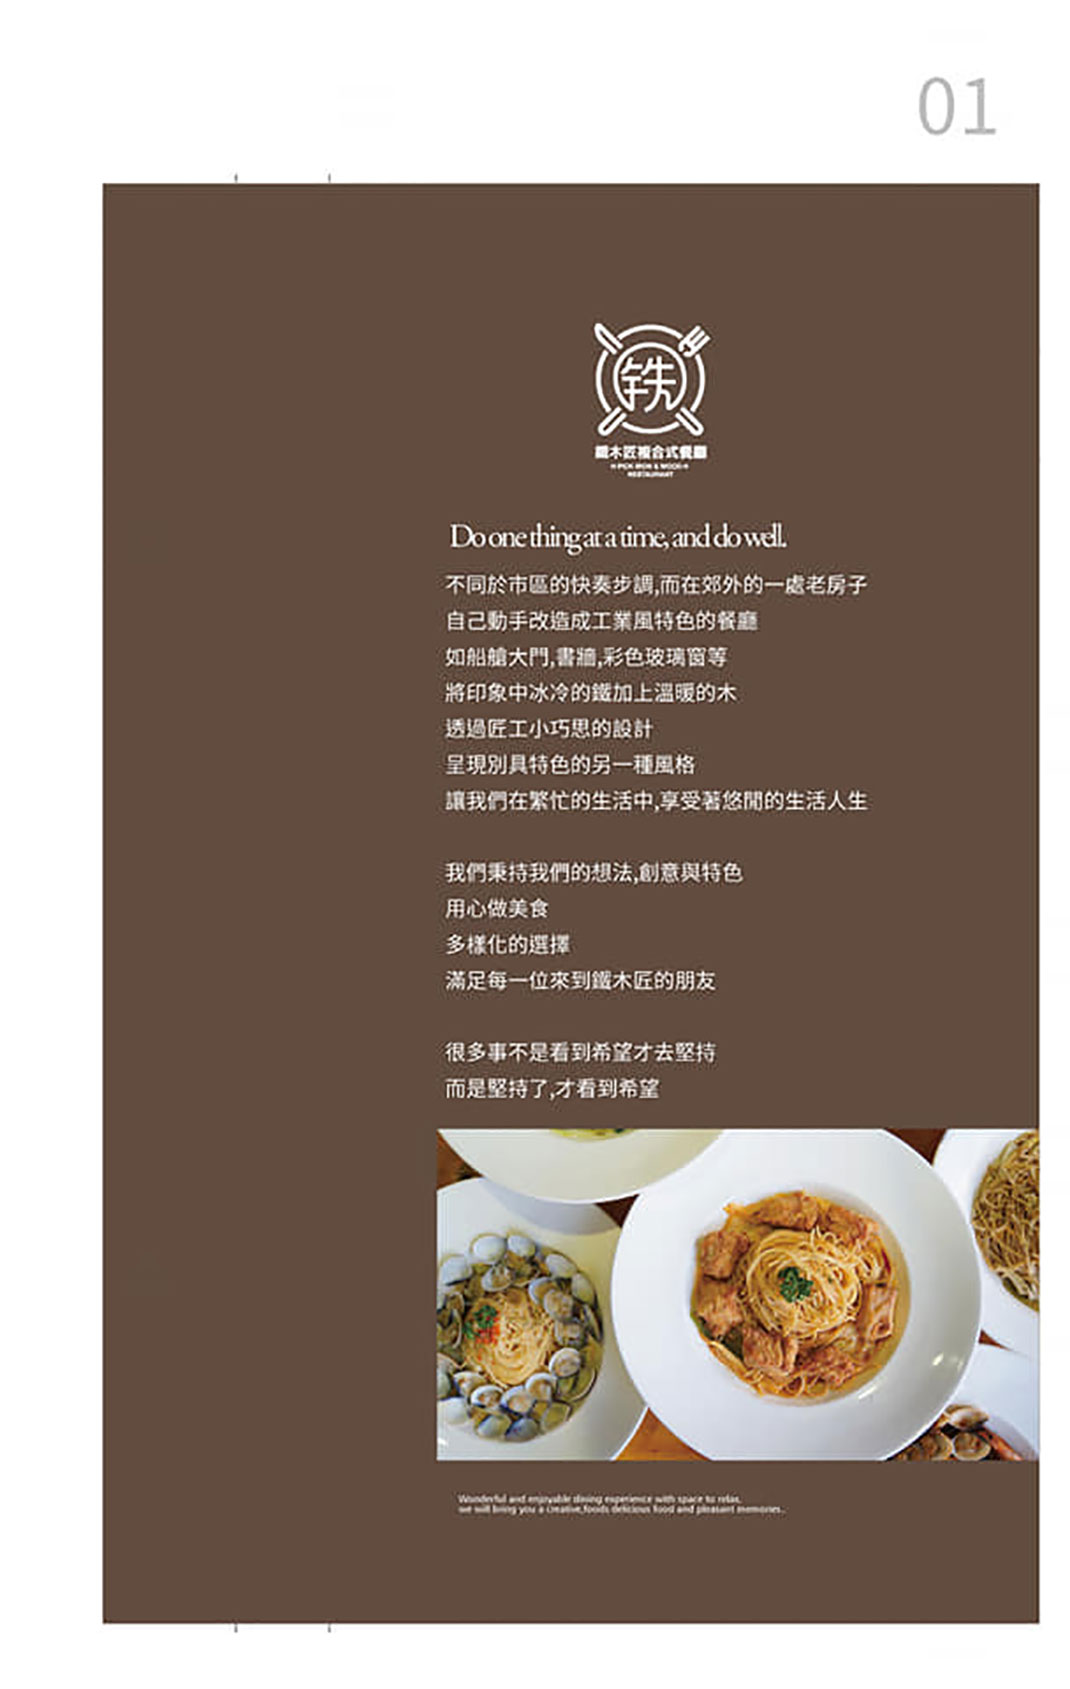 深圳餐厅vi设计,VI美食,餐饮vi,创意餐饮logo图片,深圳餐牌设计,餐厅VI设计,vi餐厅,欣赏